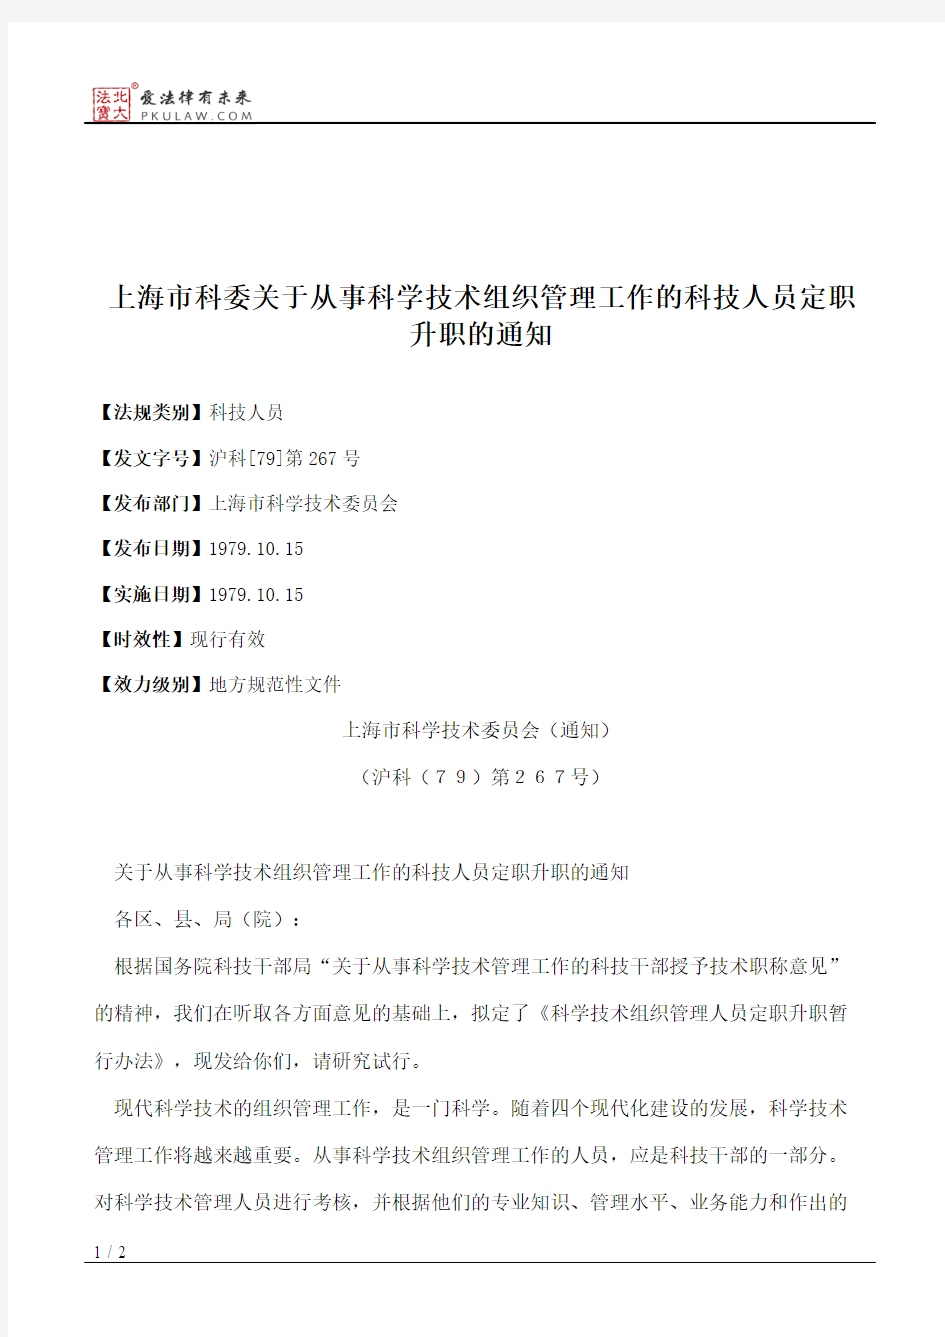 上海市科委关于从事科学技术组织管理工作的科技人员定职升职的通知